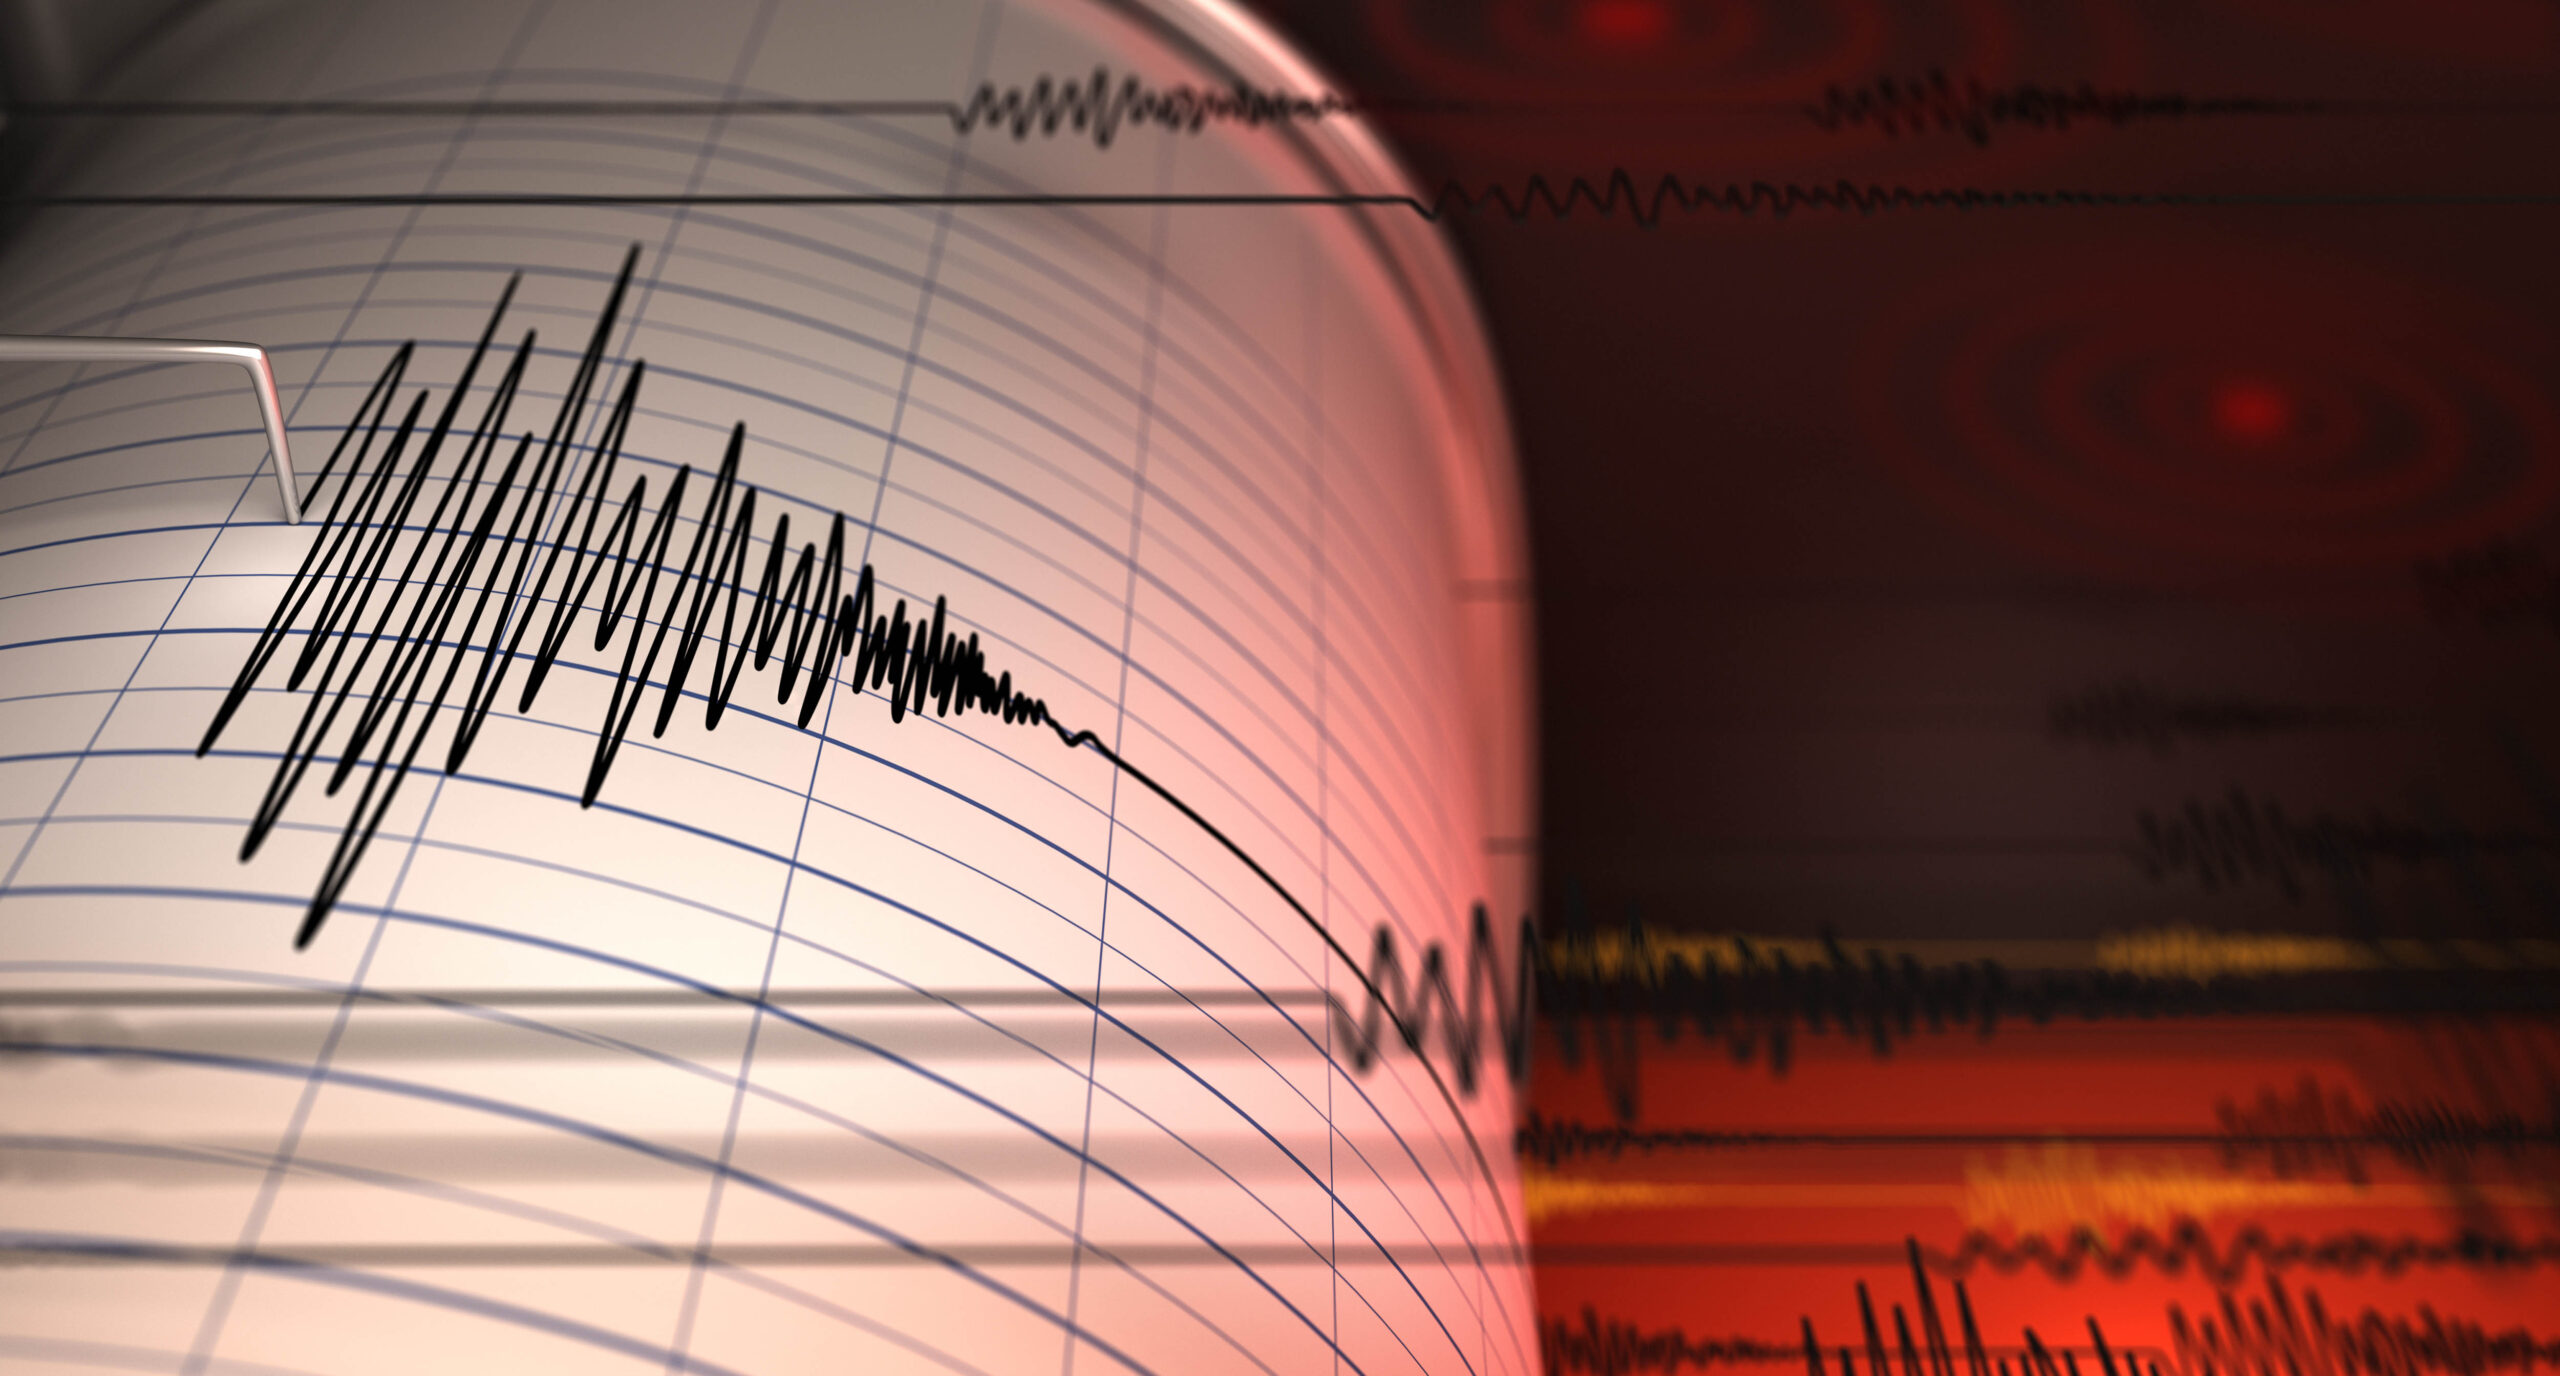 Terremoto de magnitud 7.6 sacude Indonesia y provoca daños en edificaciones